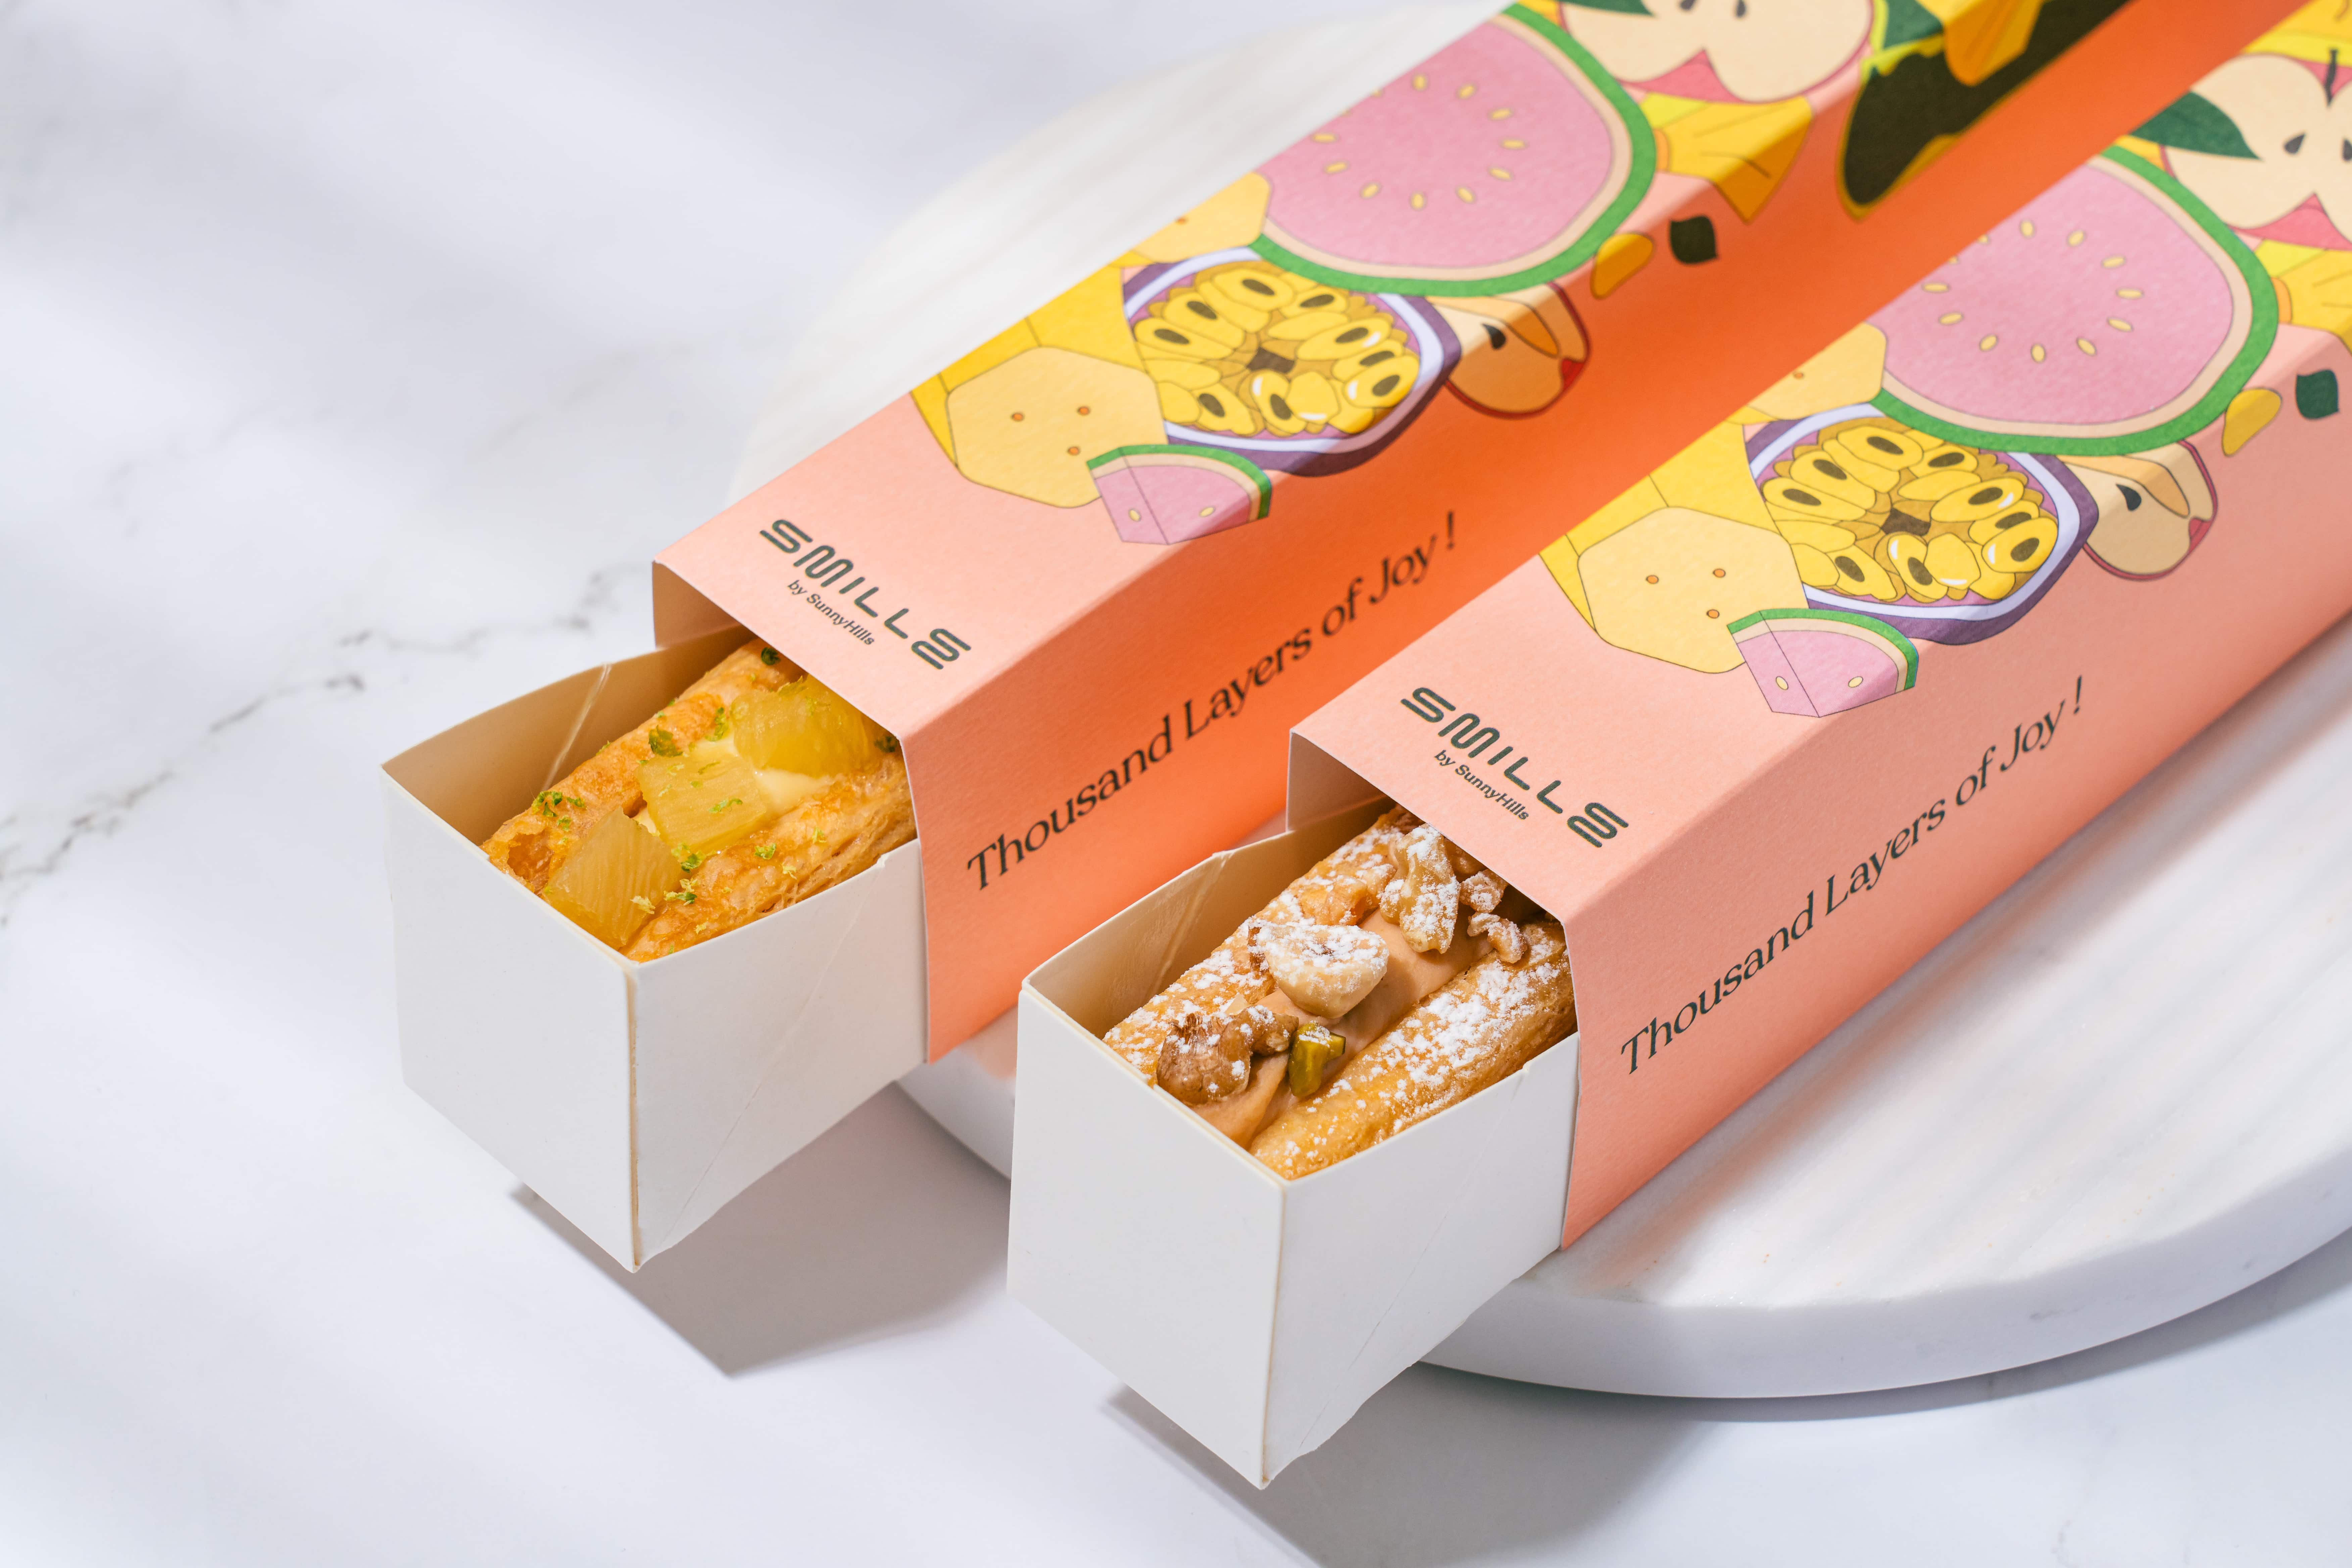 微熱山丘全新品牌 Smille 微笑蜜樂進駐松菸，首發四款水果口味的蜜樂酥